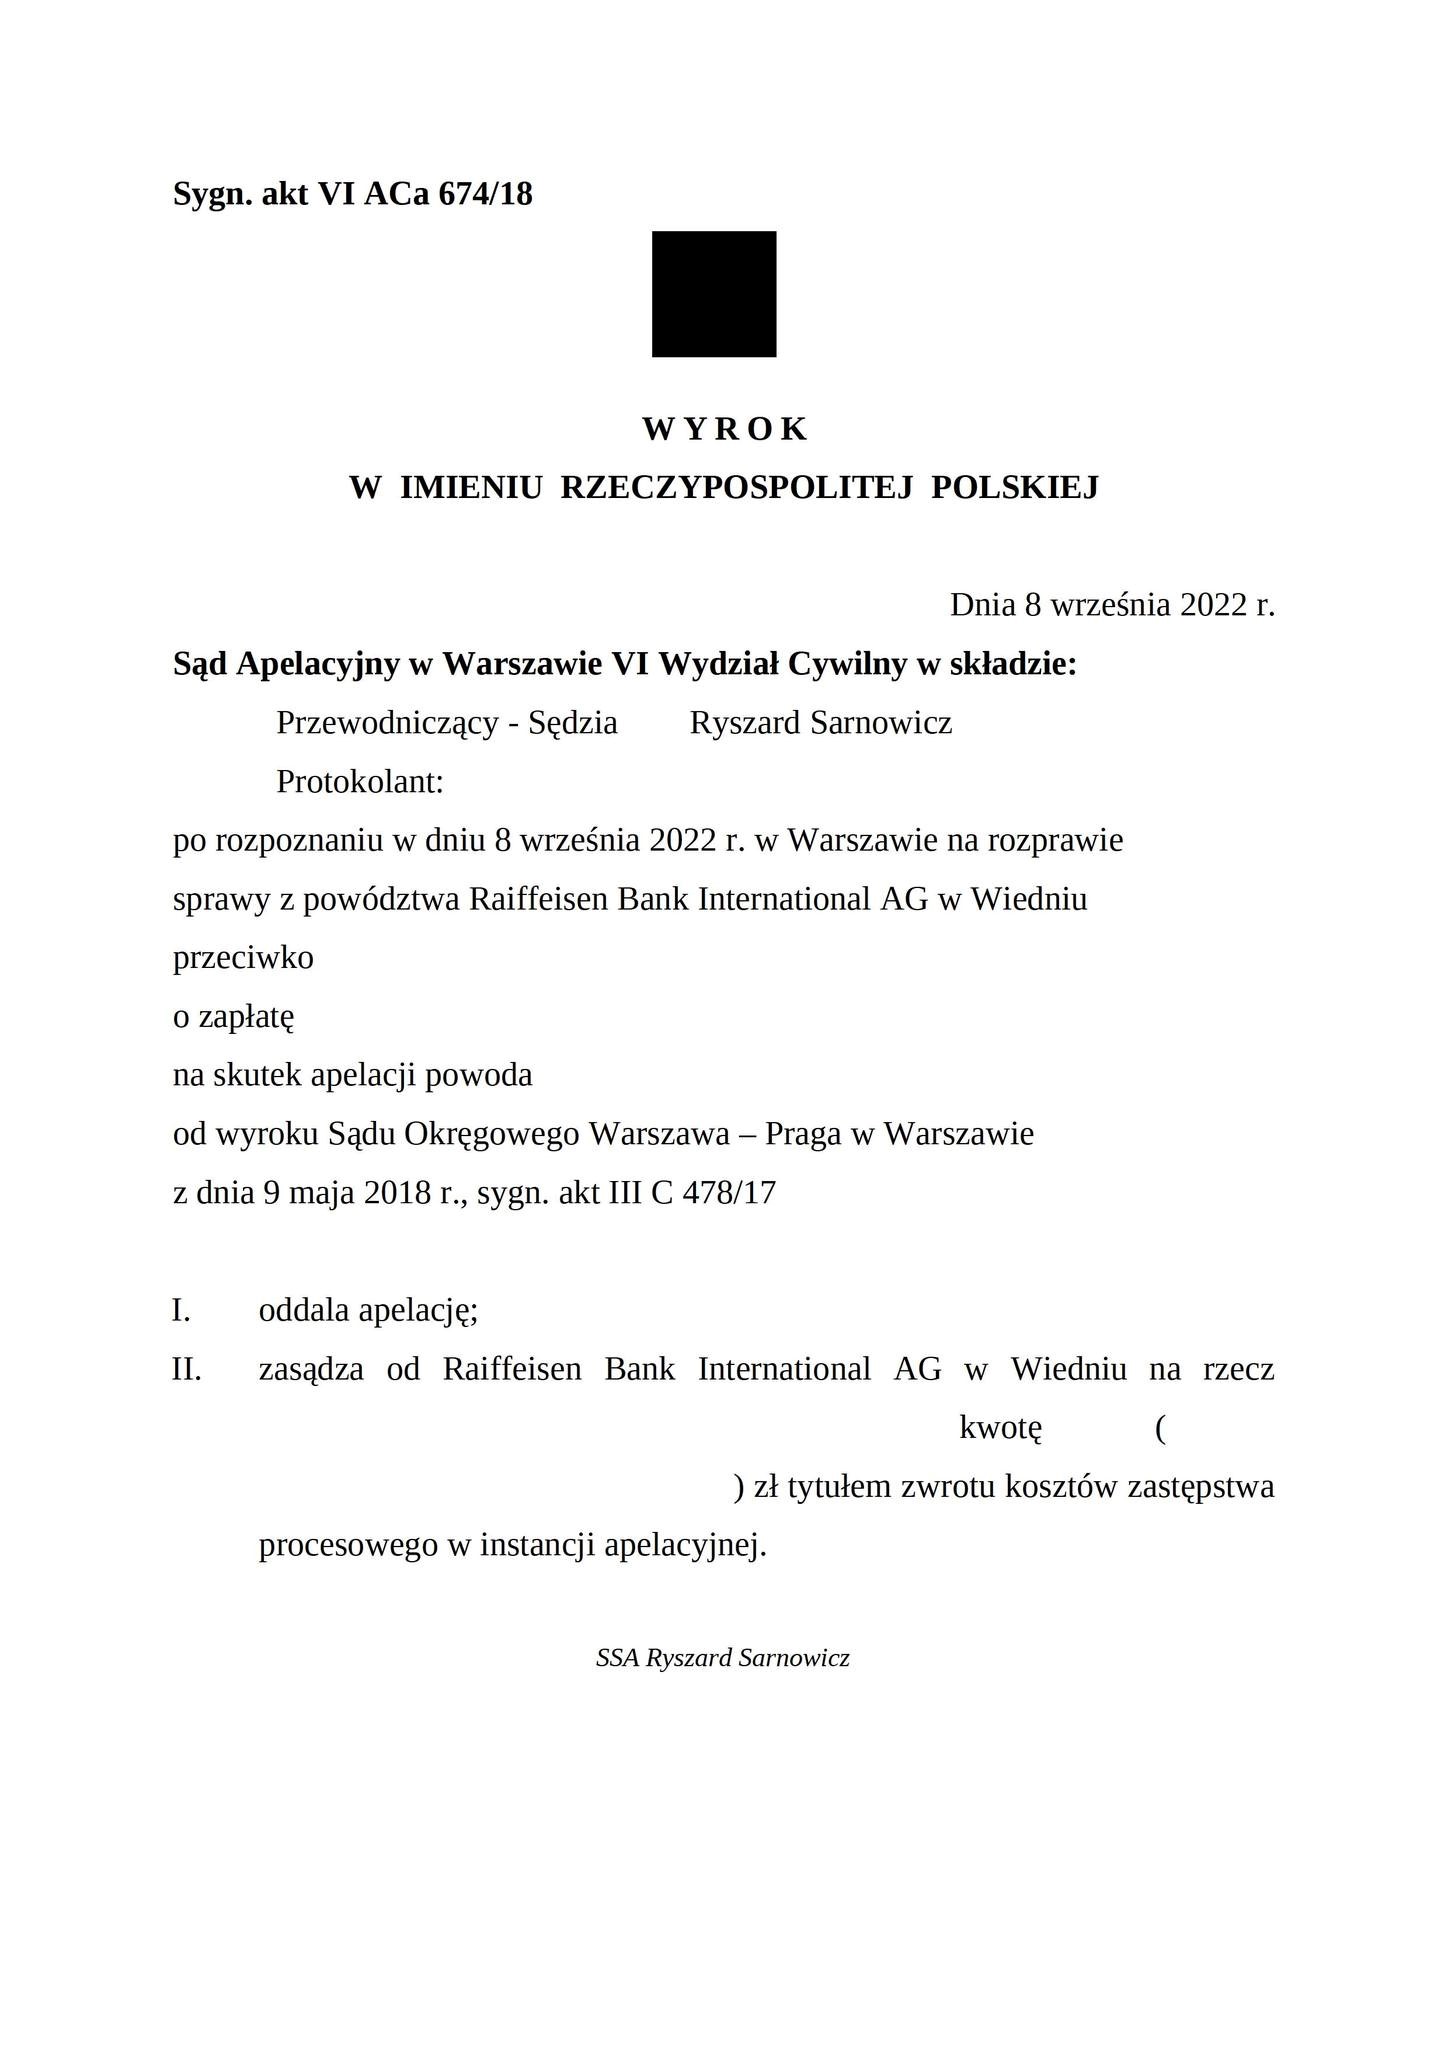 Wyrok Sądu Apelacyjnego w Warszawie z dnia 8 września 2022 r., sygn. akt VI ACa 674/18